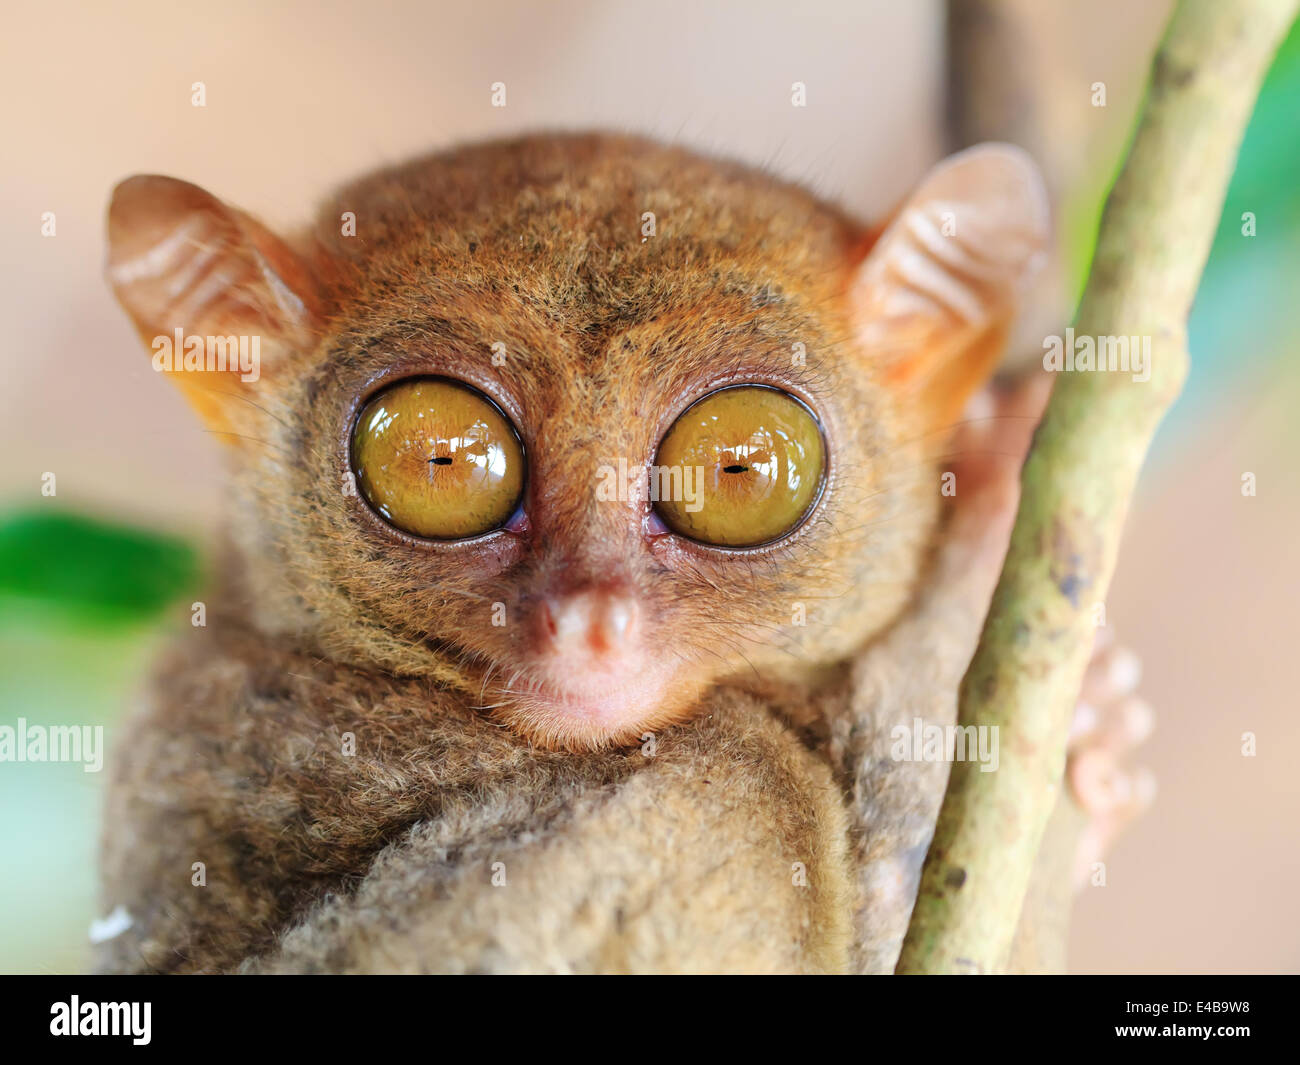 Phillipine tarsier Stock Photo